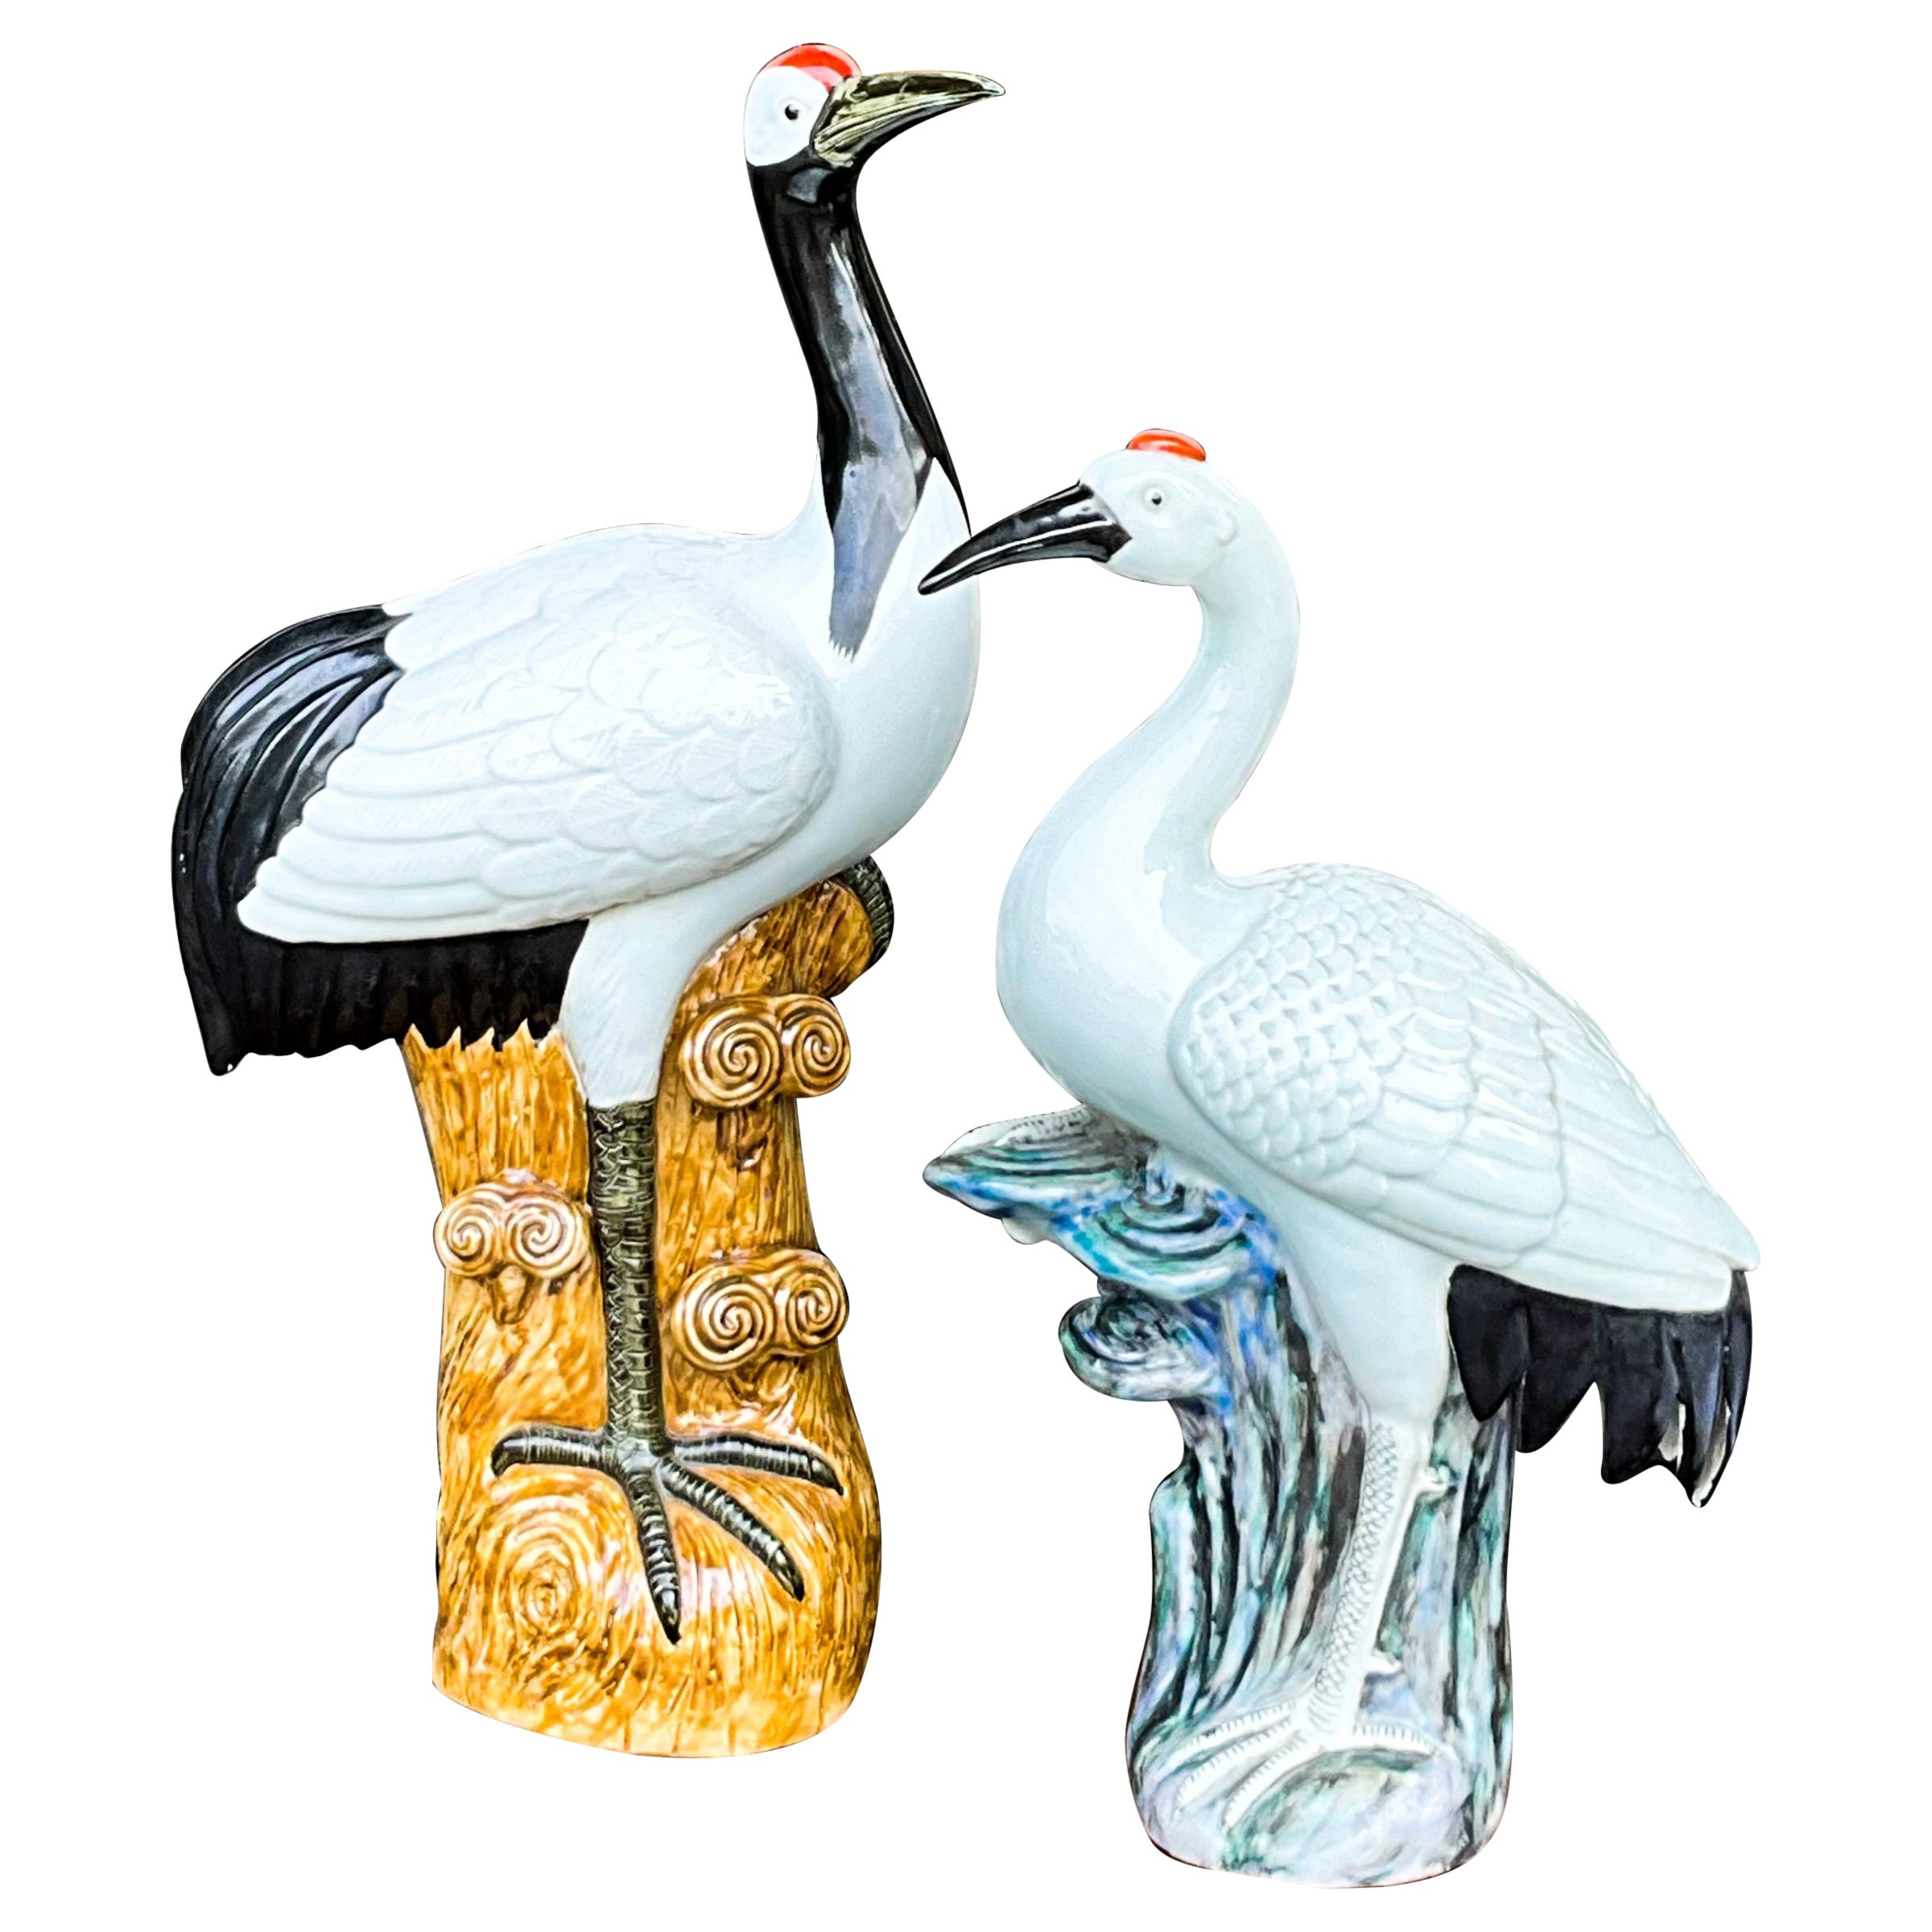 Figurines en poterie d'exportation chinoise représentant des grues de plage et des oiseaux - S/2